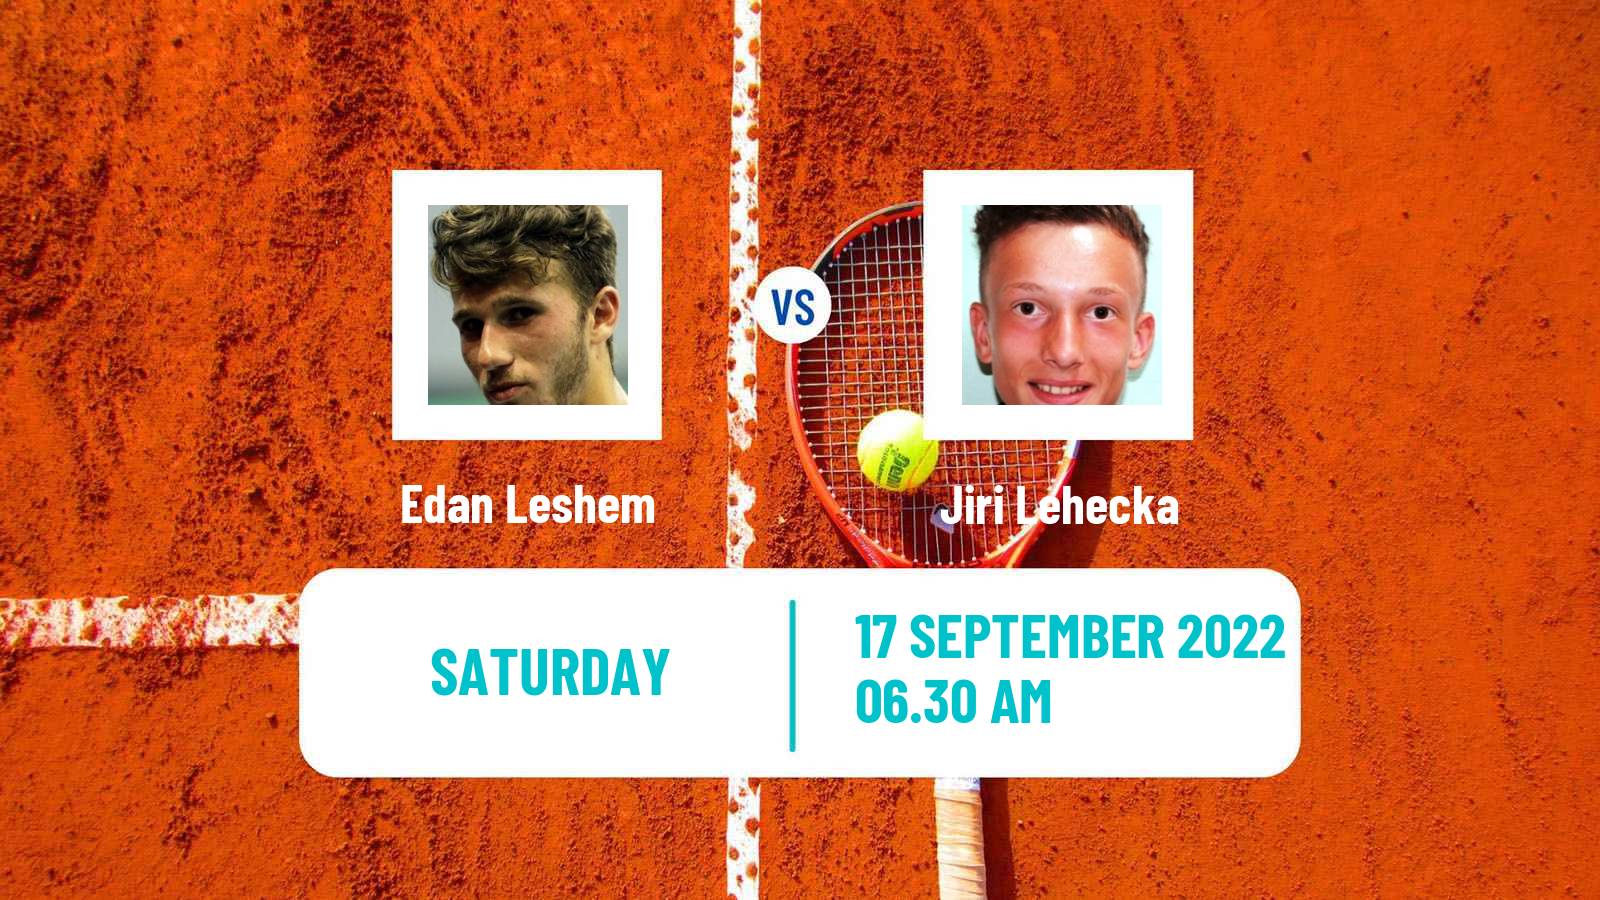 Tennis Davis Cup World Group I Edan Leshem - Jiri Lehecka